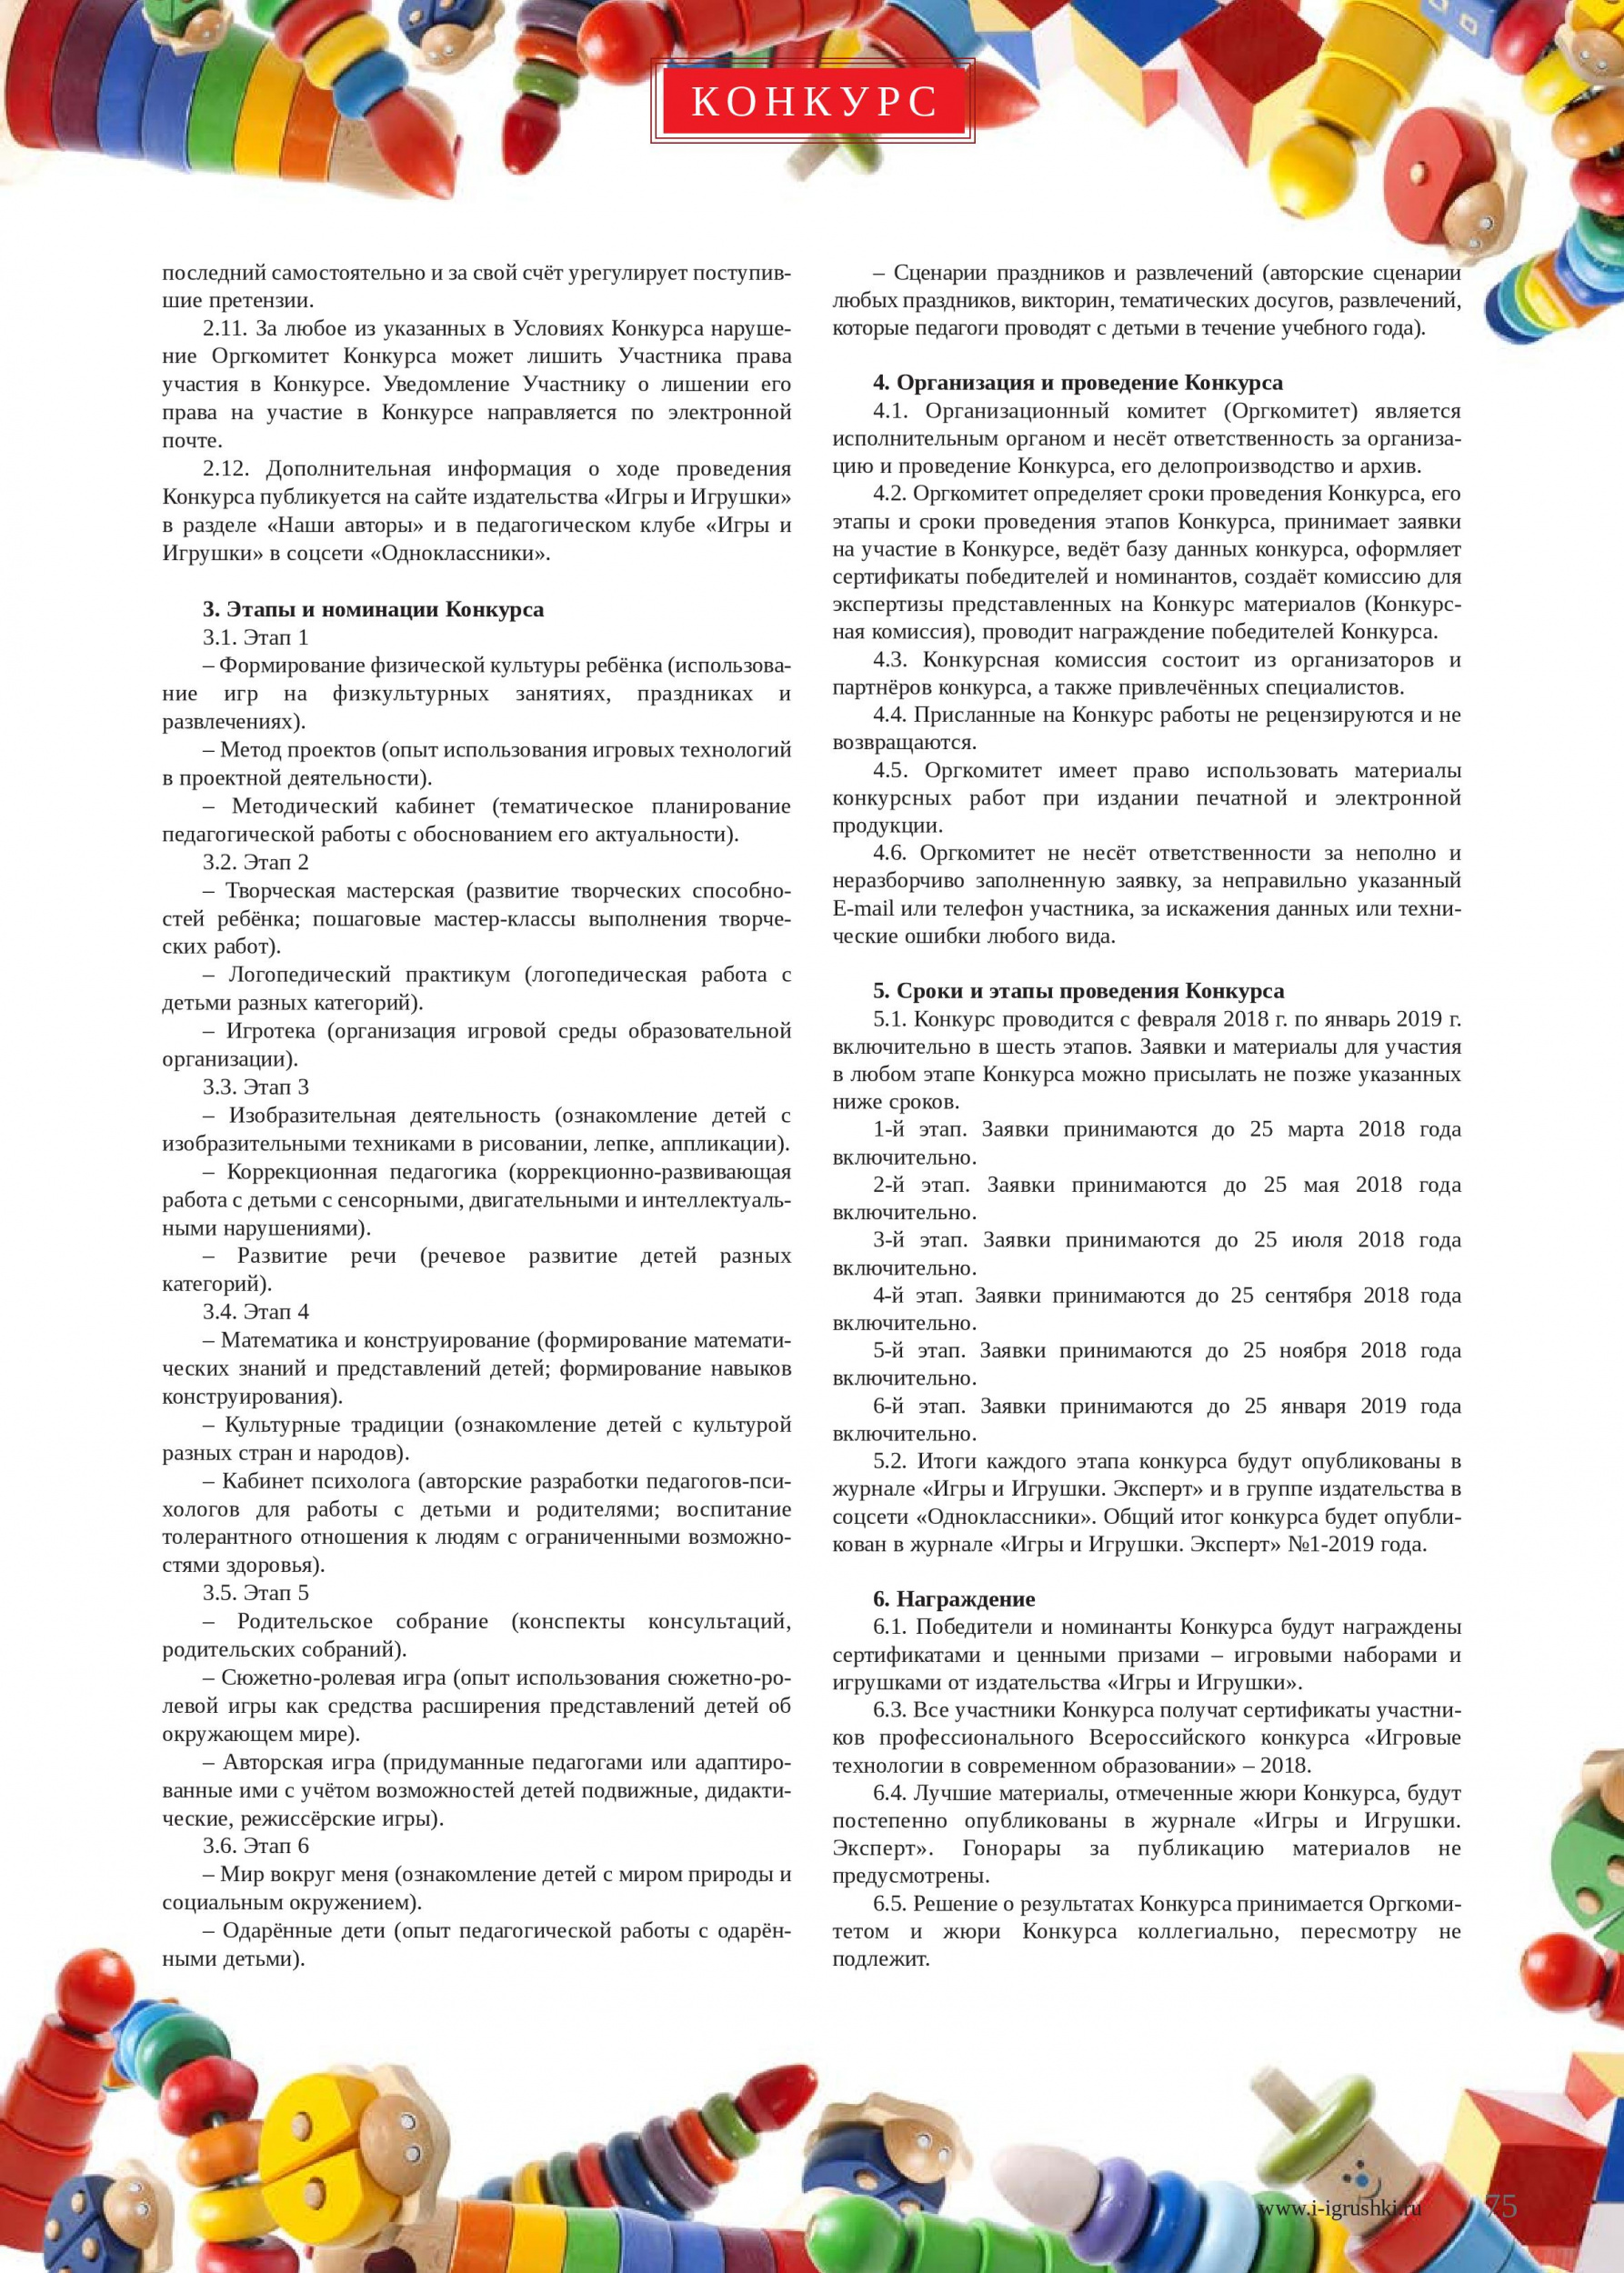 Всероссийский конкурс для педагогов образовательных организаций 2